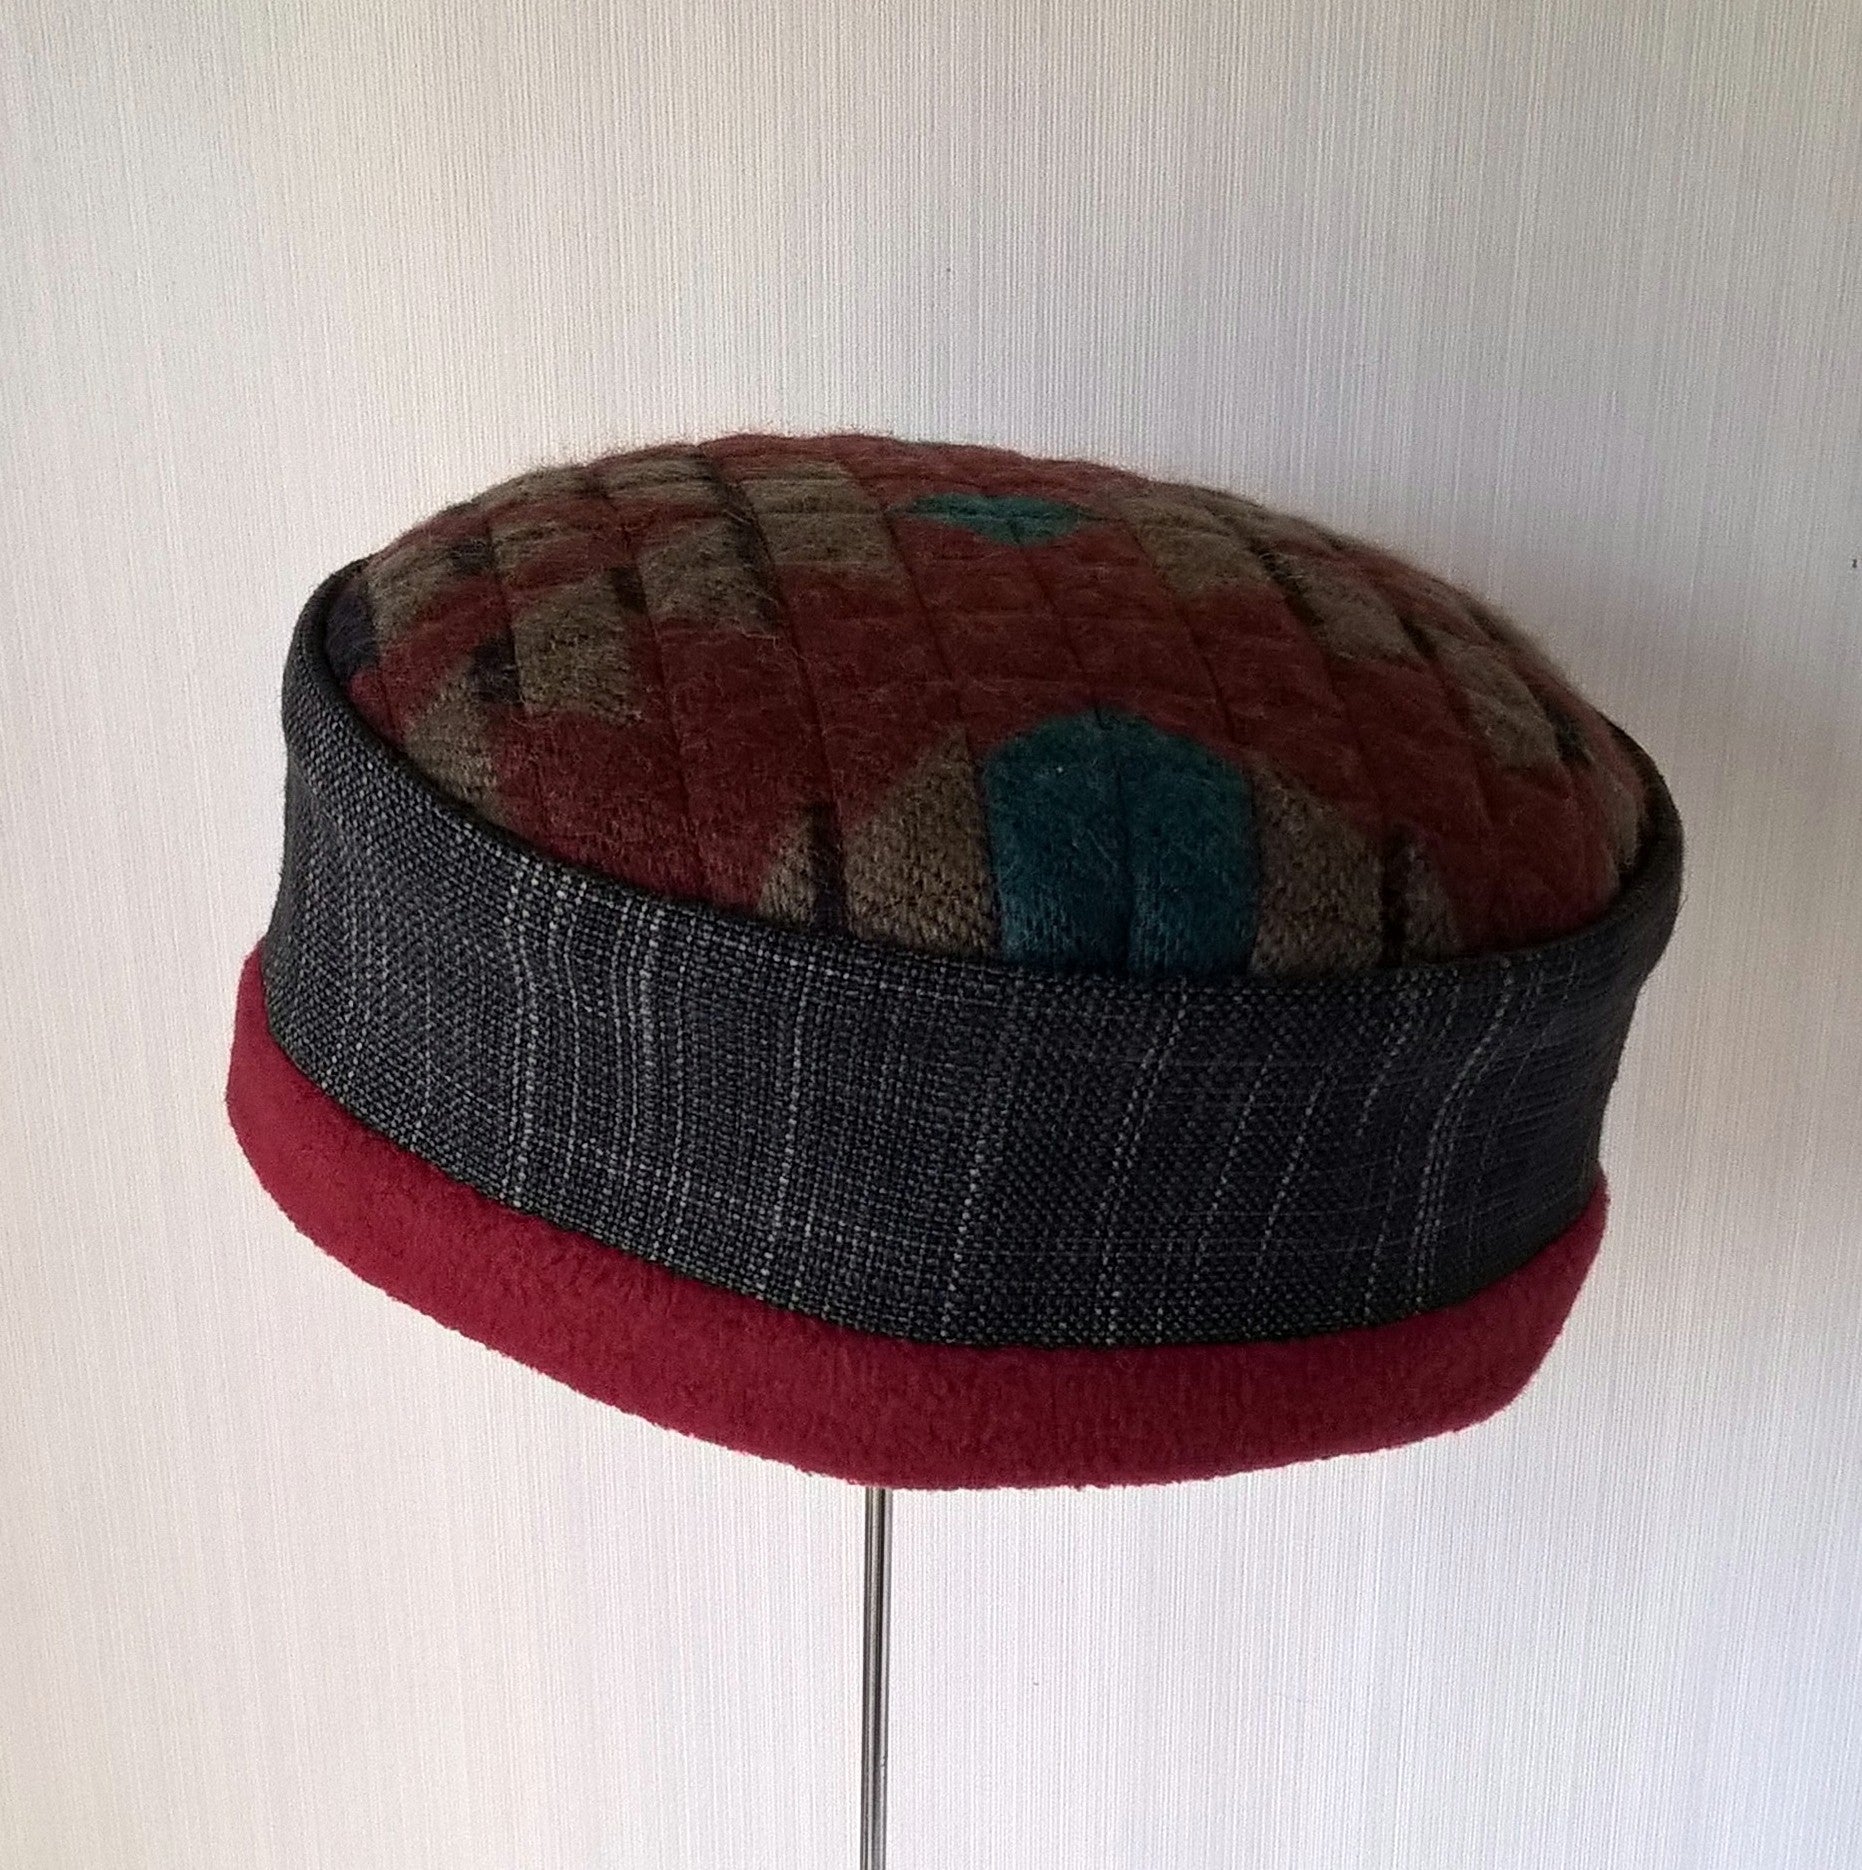 Aztec design brimless fleece hat